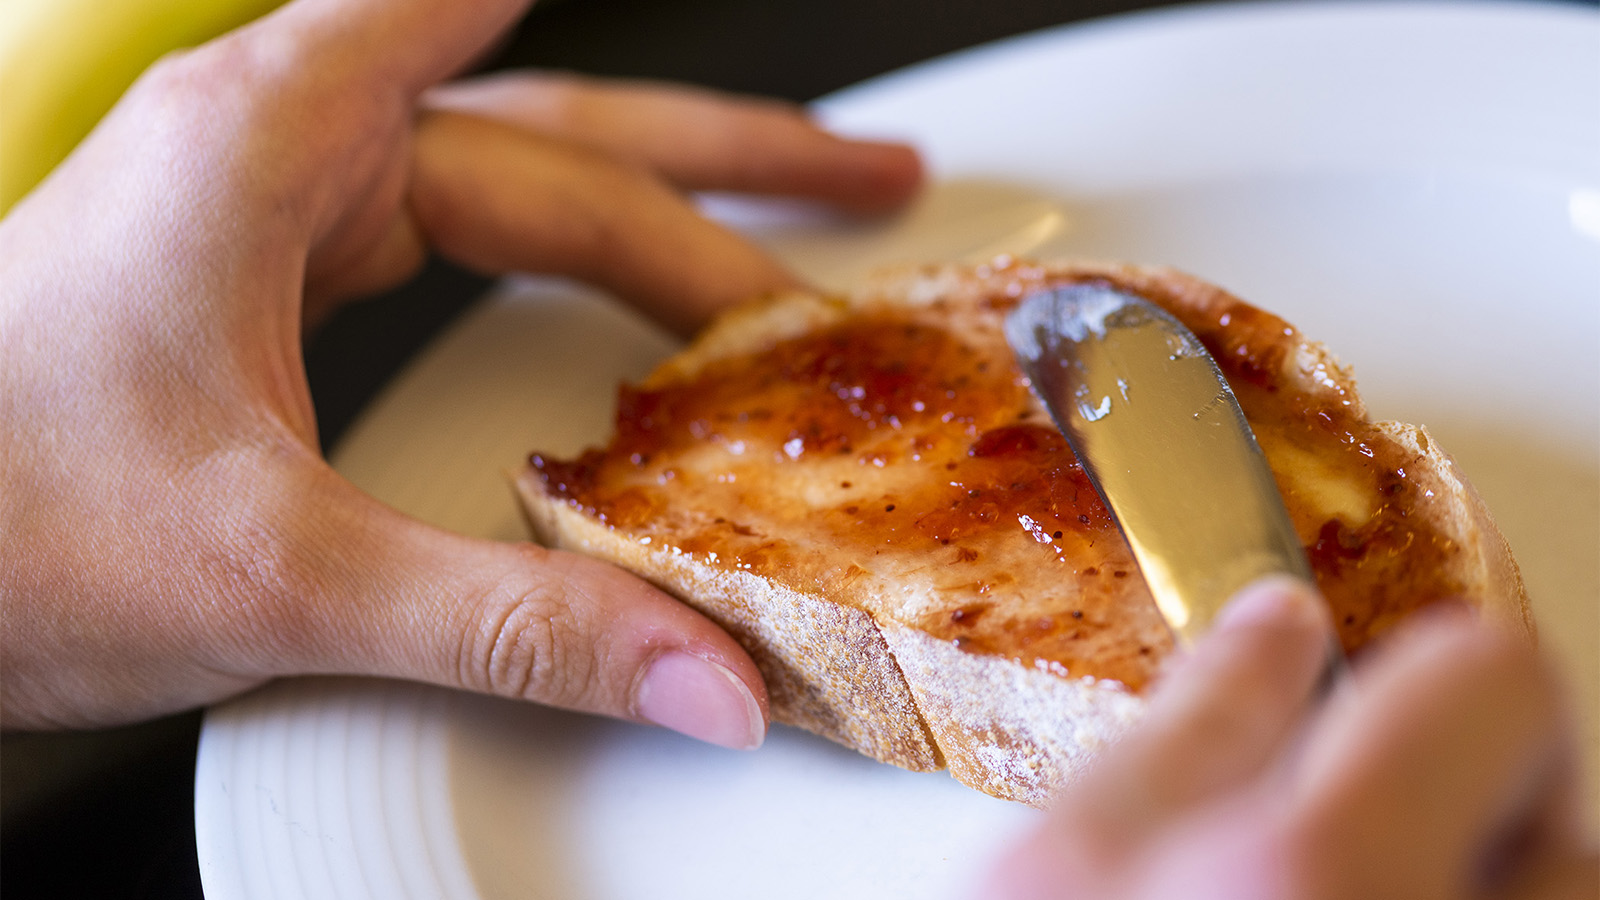 Detailaufnahme einer Mädchenhand die mit dem Messer Marmelade auf ein Brot streicht